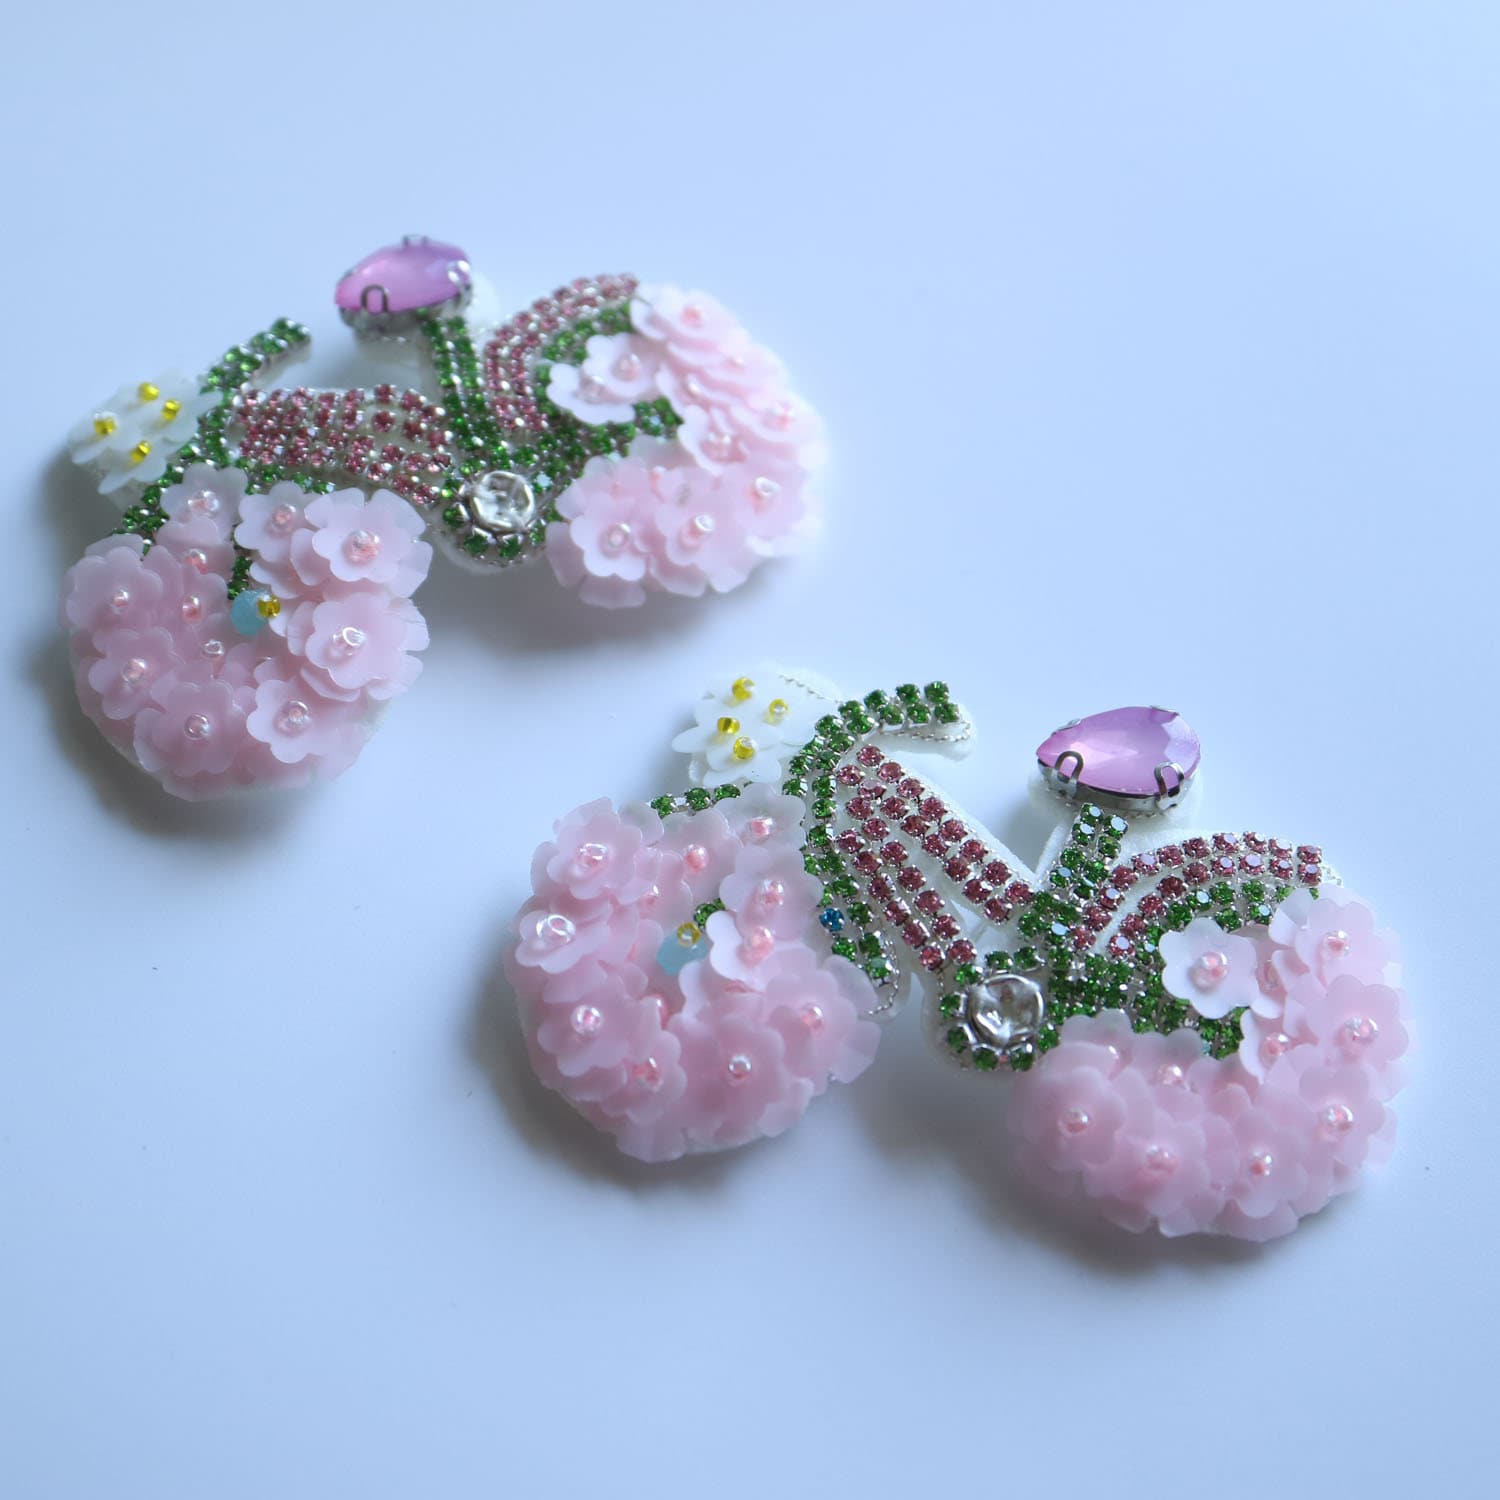 2 Teile/Los 3D Blume Fahrrad Perlen Aufnäher Für Kleidung Nähen Patch Applikationen Nähen Strass Dekorative Parches Jacken Rucksack Taschen Hüte von okahome